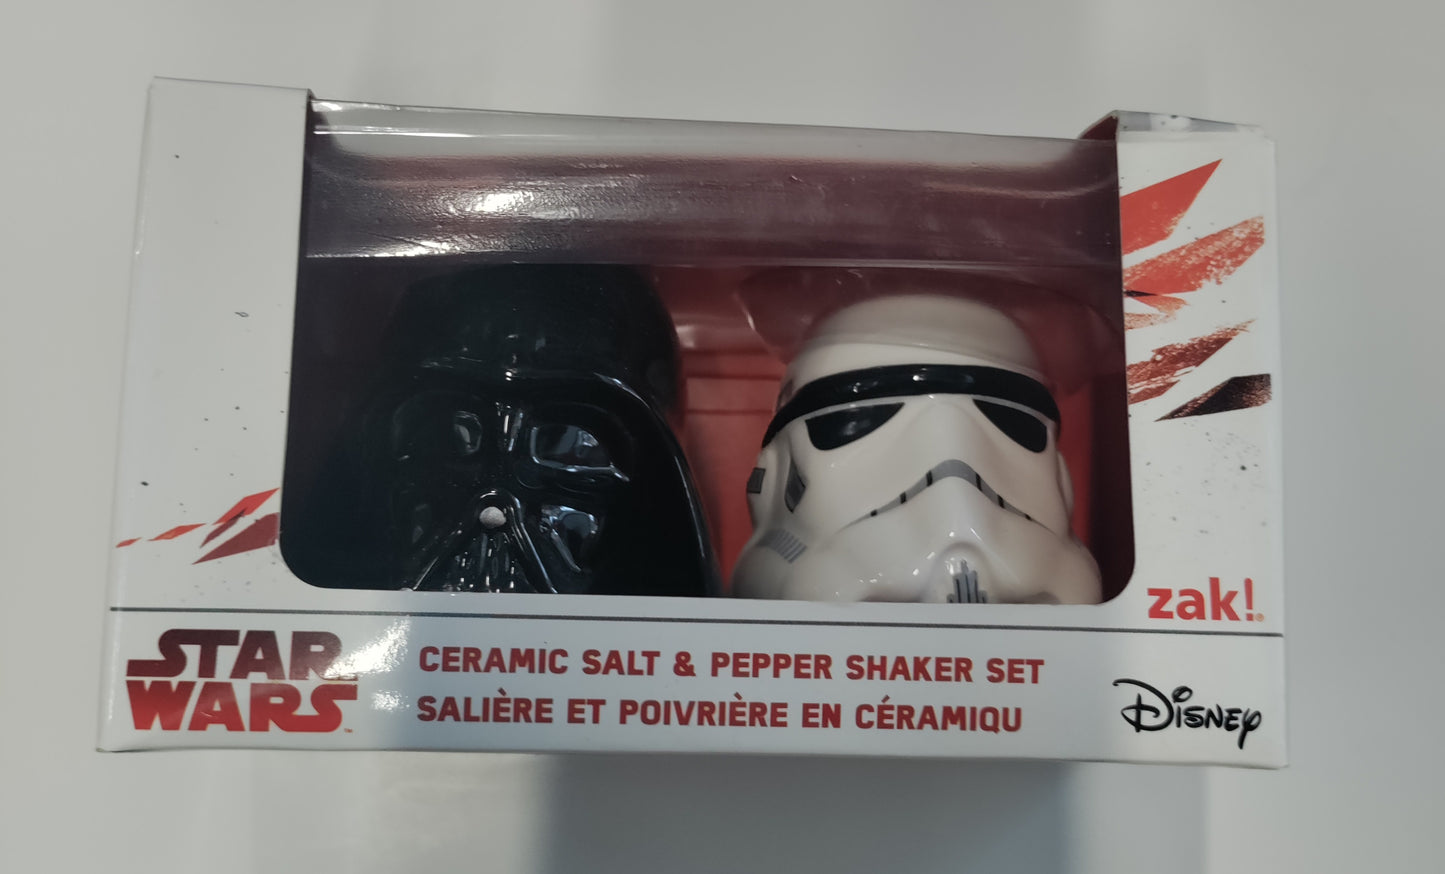 Star Wars Ceramic Salt & Pepper Shaker Set